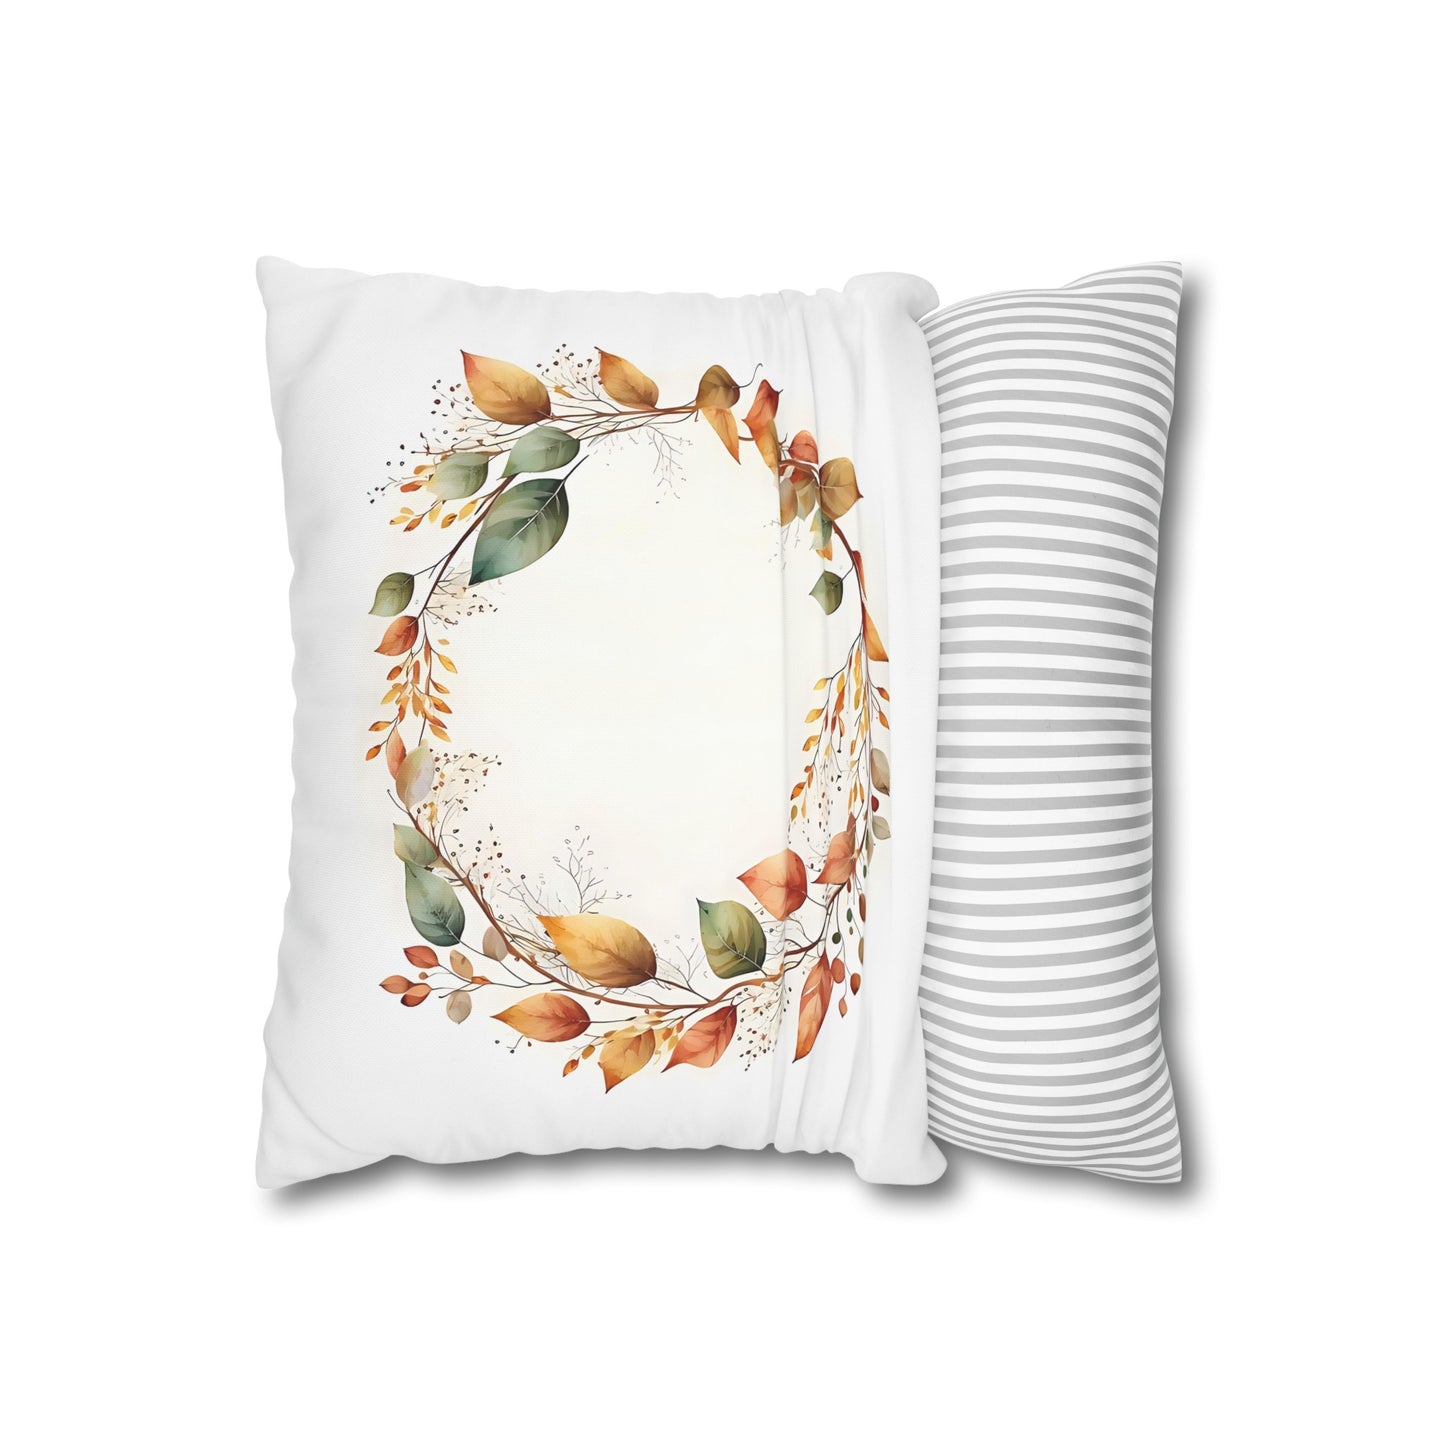 Autumn Wreath #2 Cushion Cover